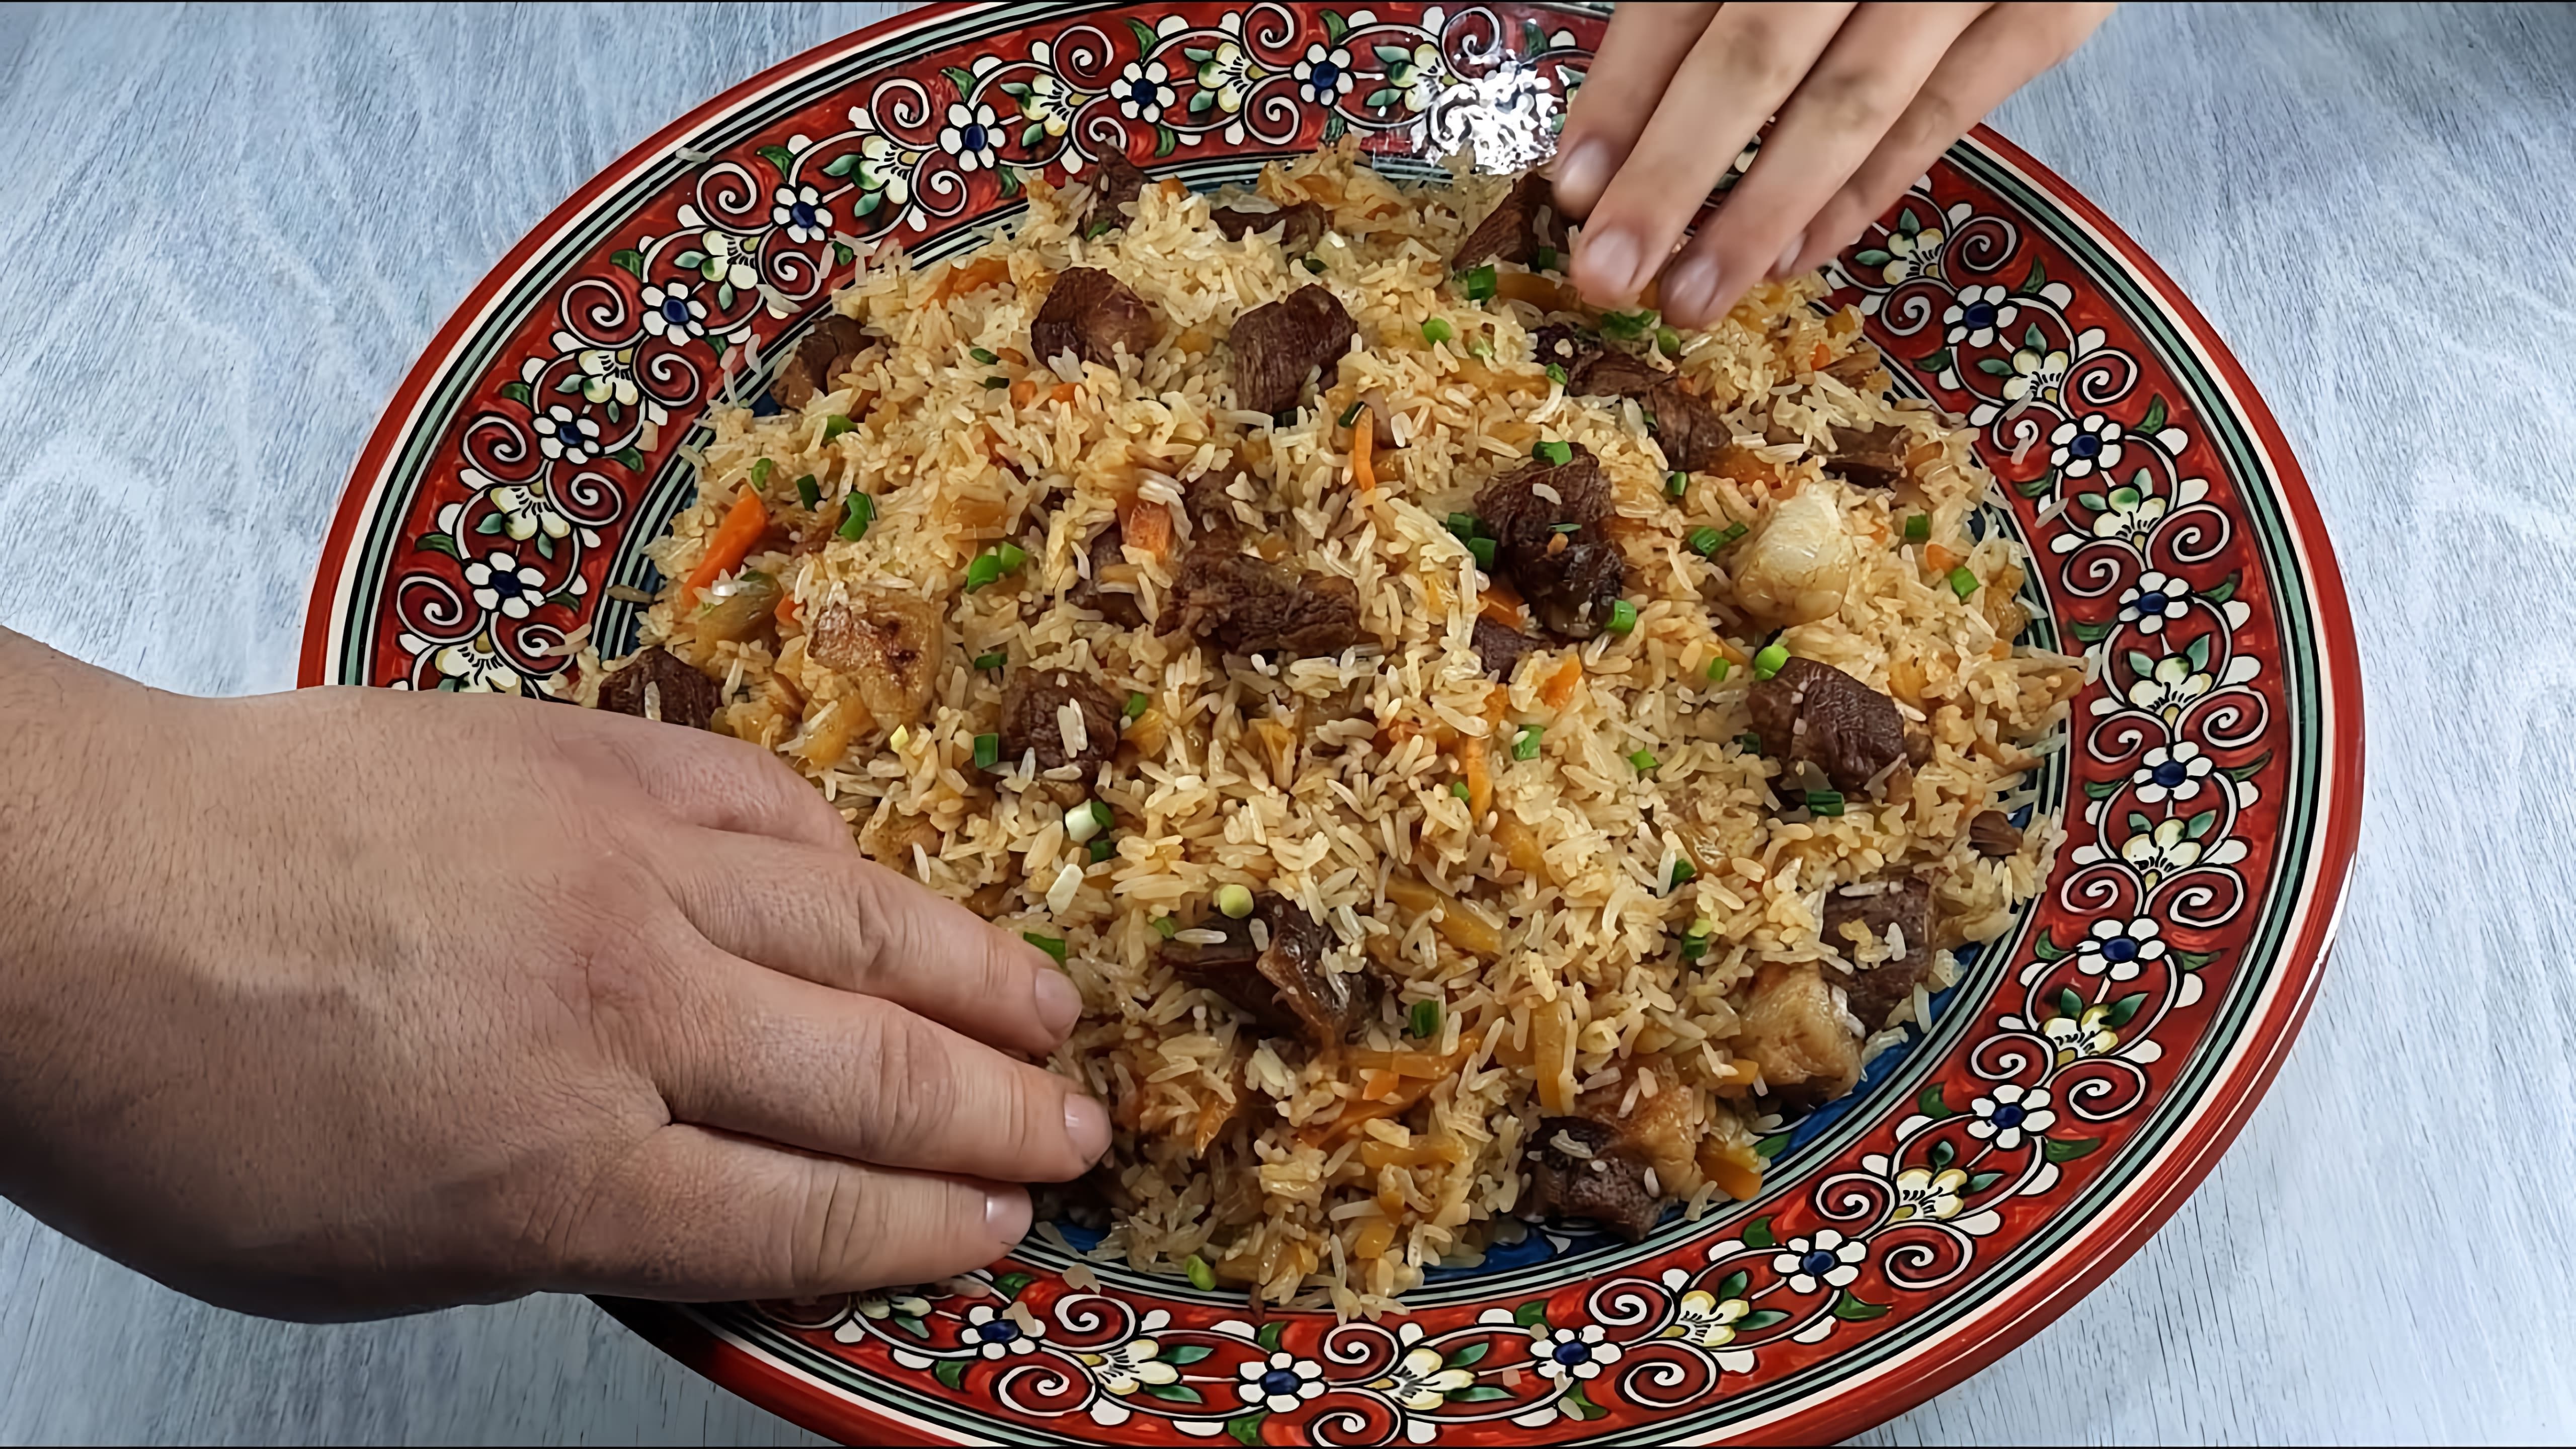 В данном видео демонстрируется процесс приготовления узбекского плова